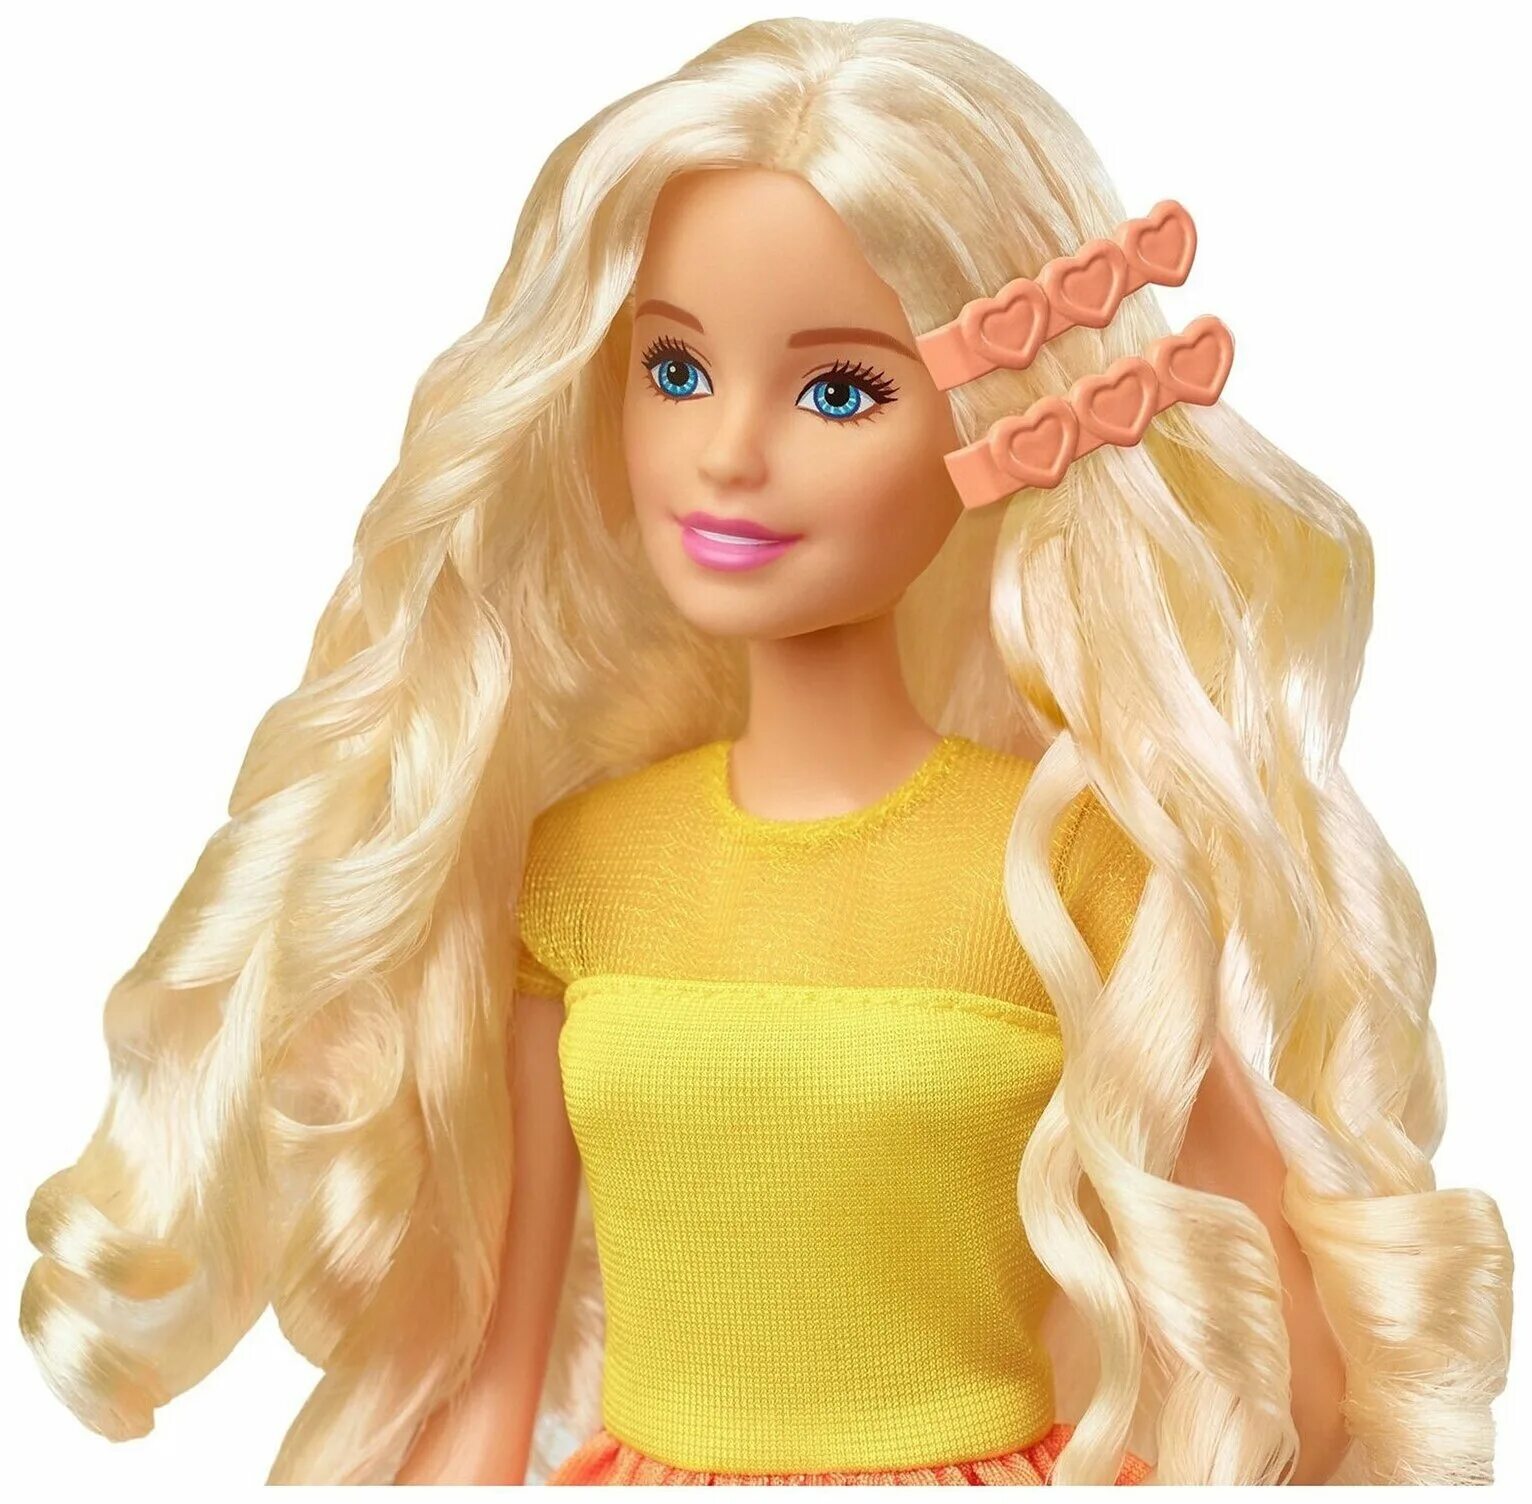 Заказать куколки. Кукла Barbie GBK 24. Барби Ultimate Curls. Кукла Barbie невероятные кудряшки gbk24. Кукла Barbie невероятные кудряшки с аксессуарами для волос, gbk24.